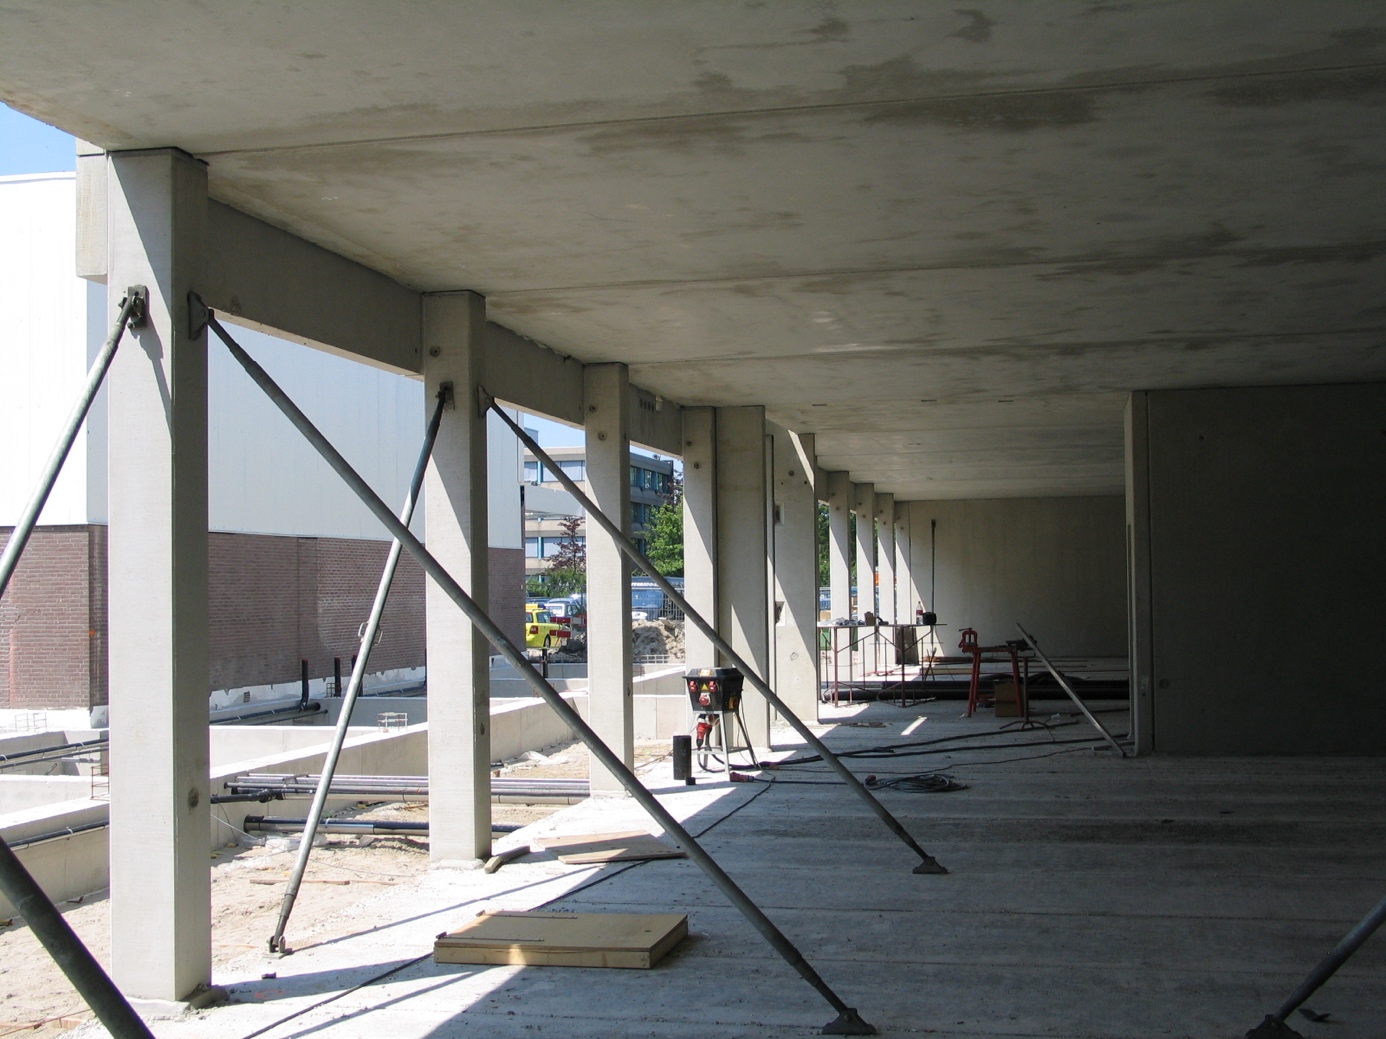 Betonnen vloeren, wanden en kolommen vormen samen de betonconstructie